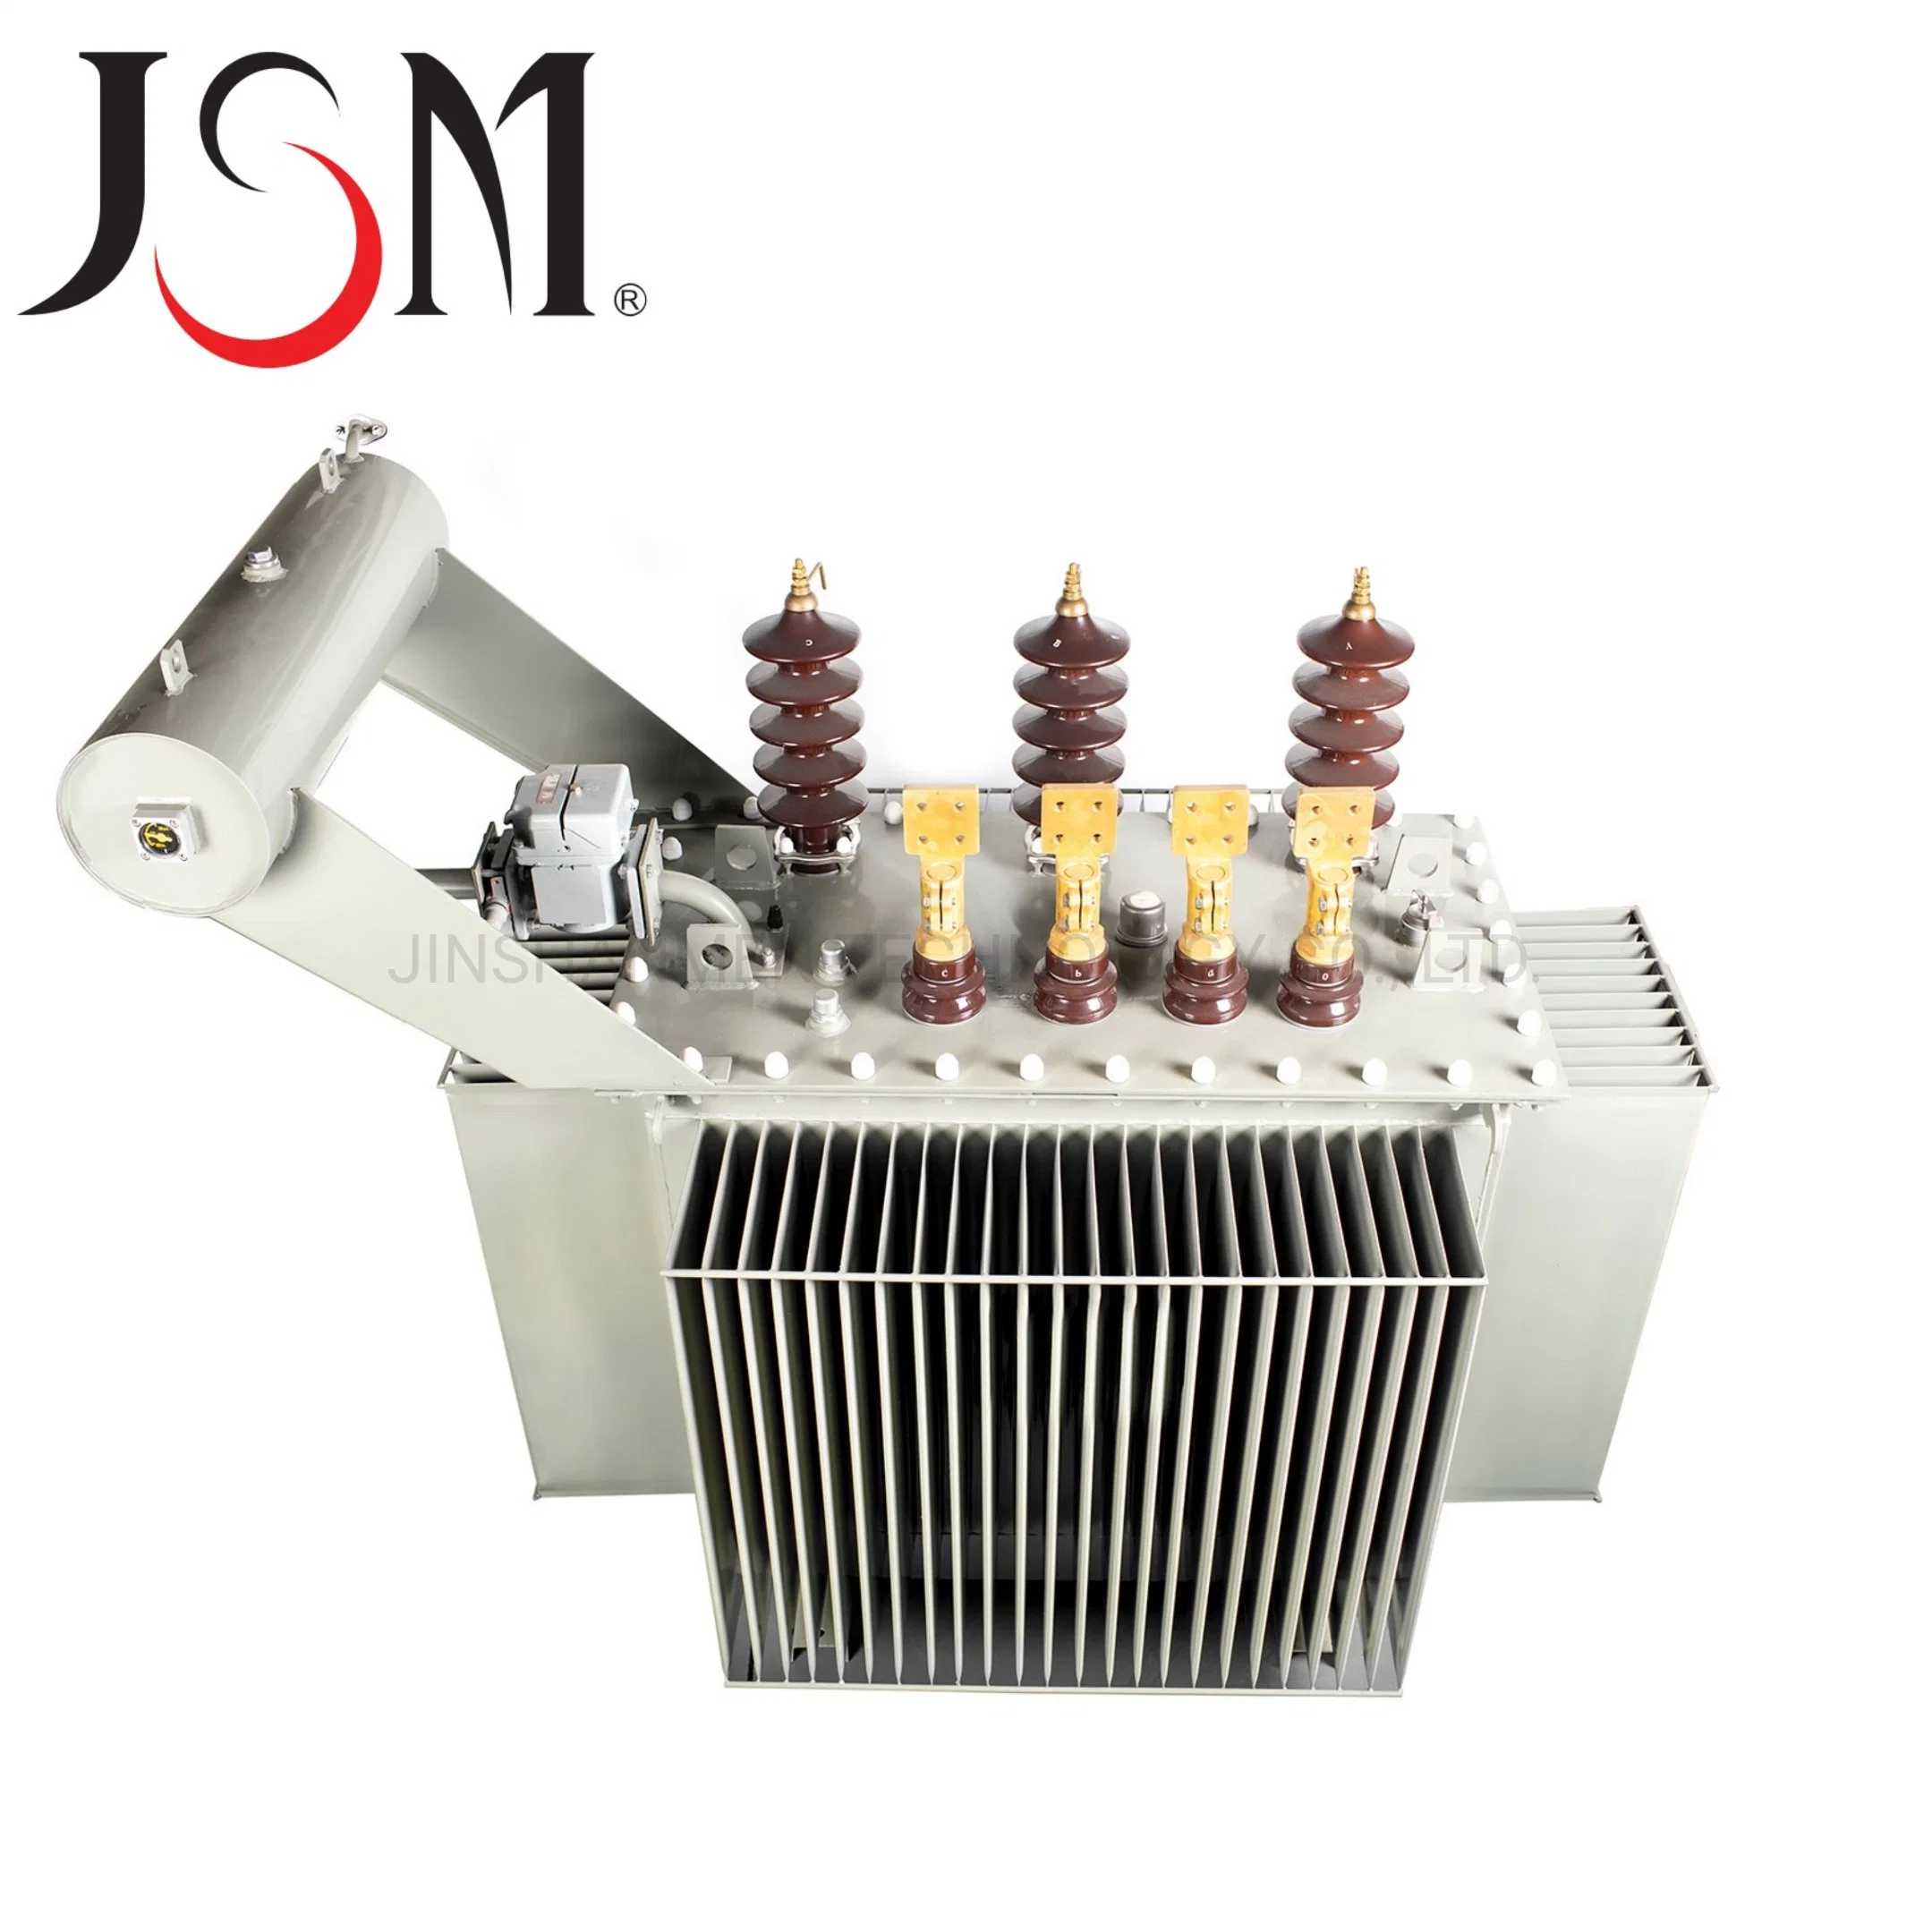 جهاز توزيع زيتي عازل بجهد 33 كيلو فولت من سلسلة Jsm S9-M